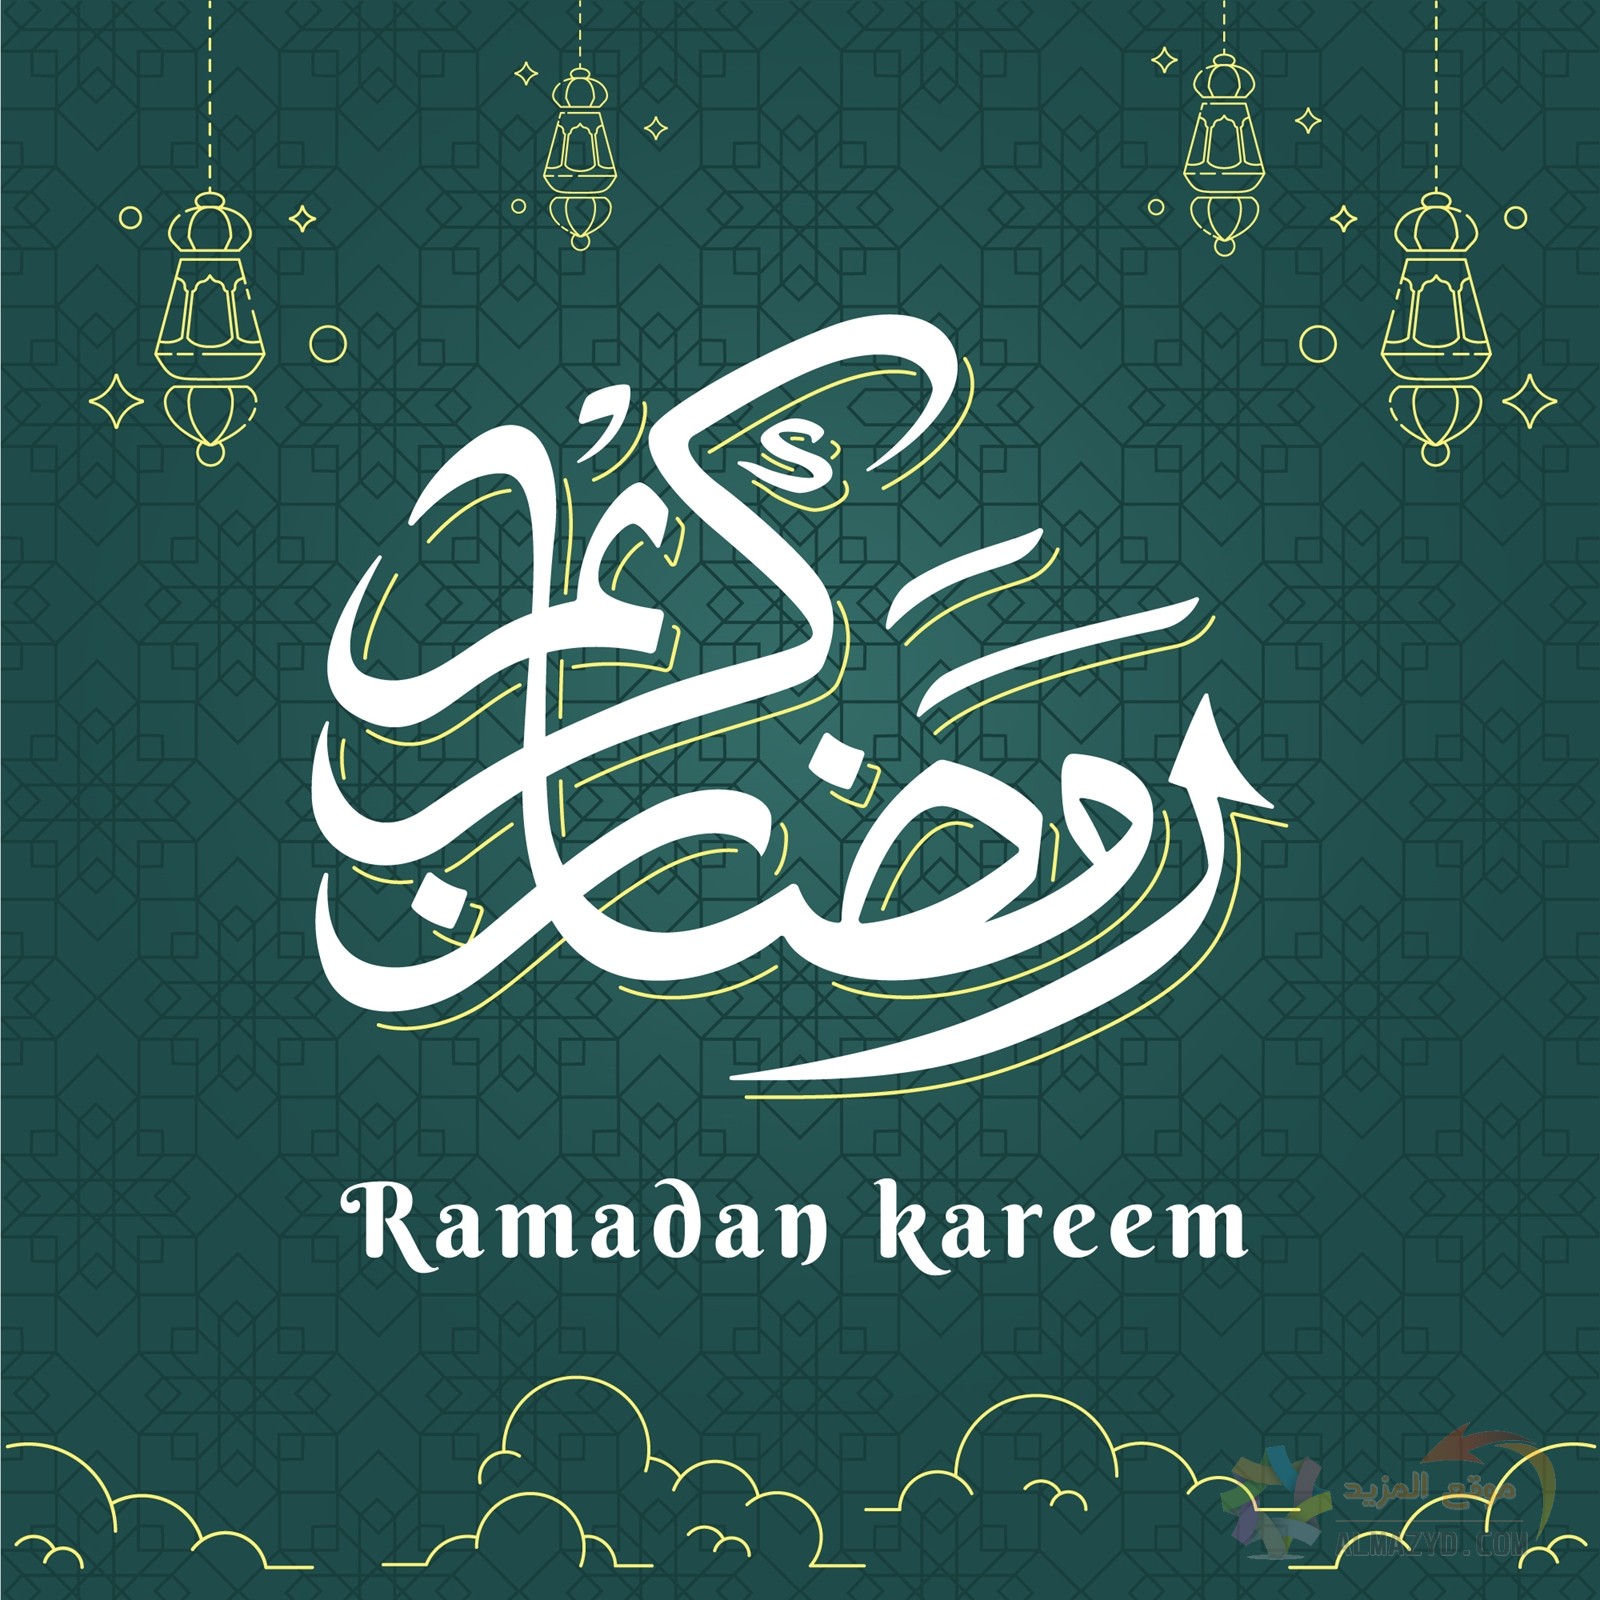 كلام وصور عن شهر رمضان الفضيل ٢٠٢٤ لأجمل التهاني